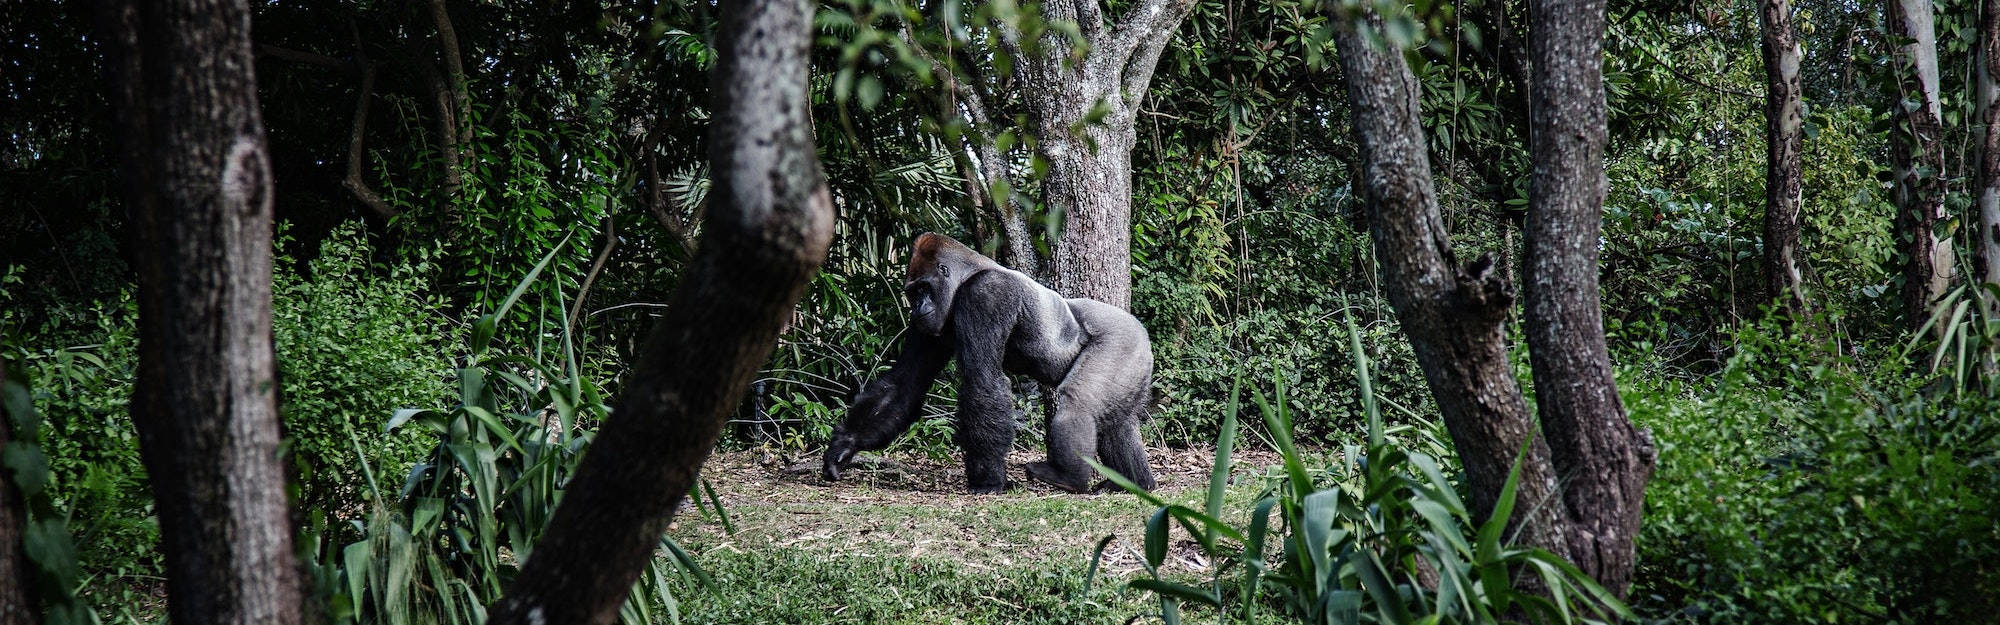 Gorilla In Gabon Background